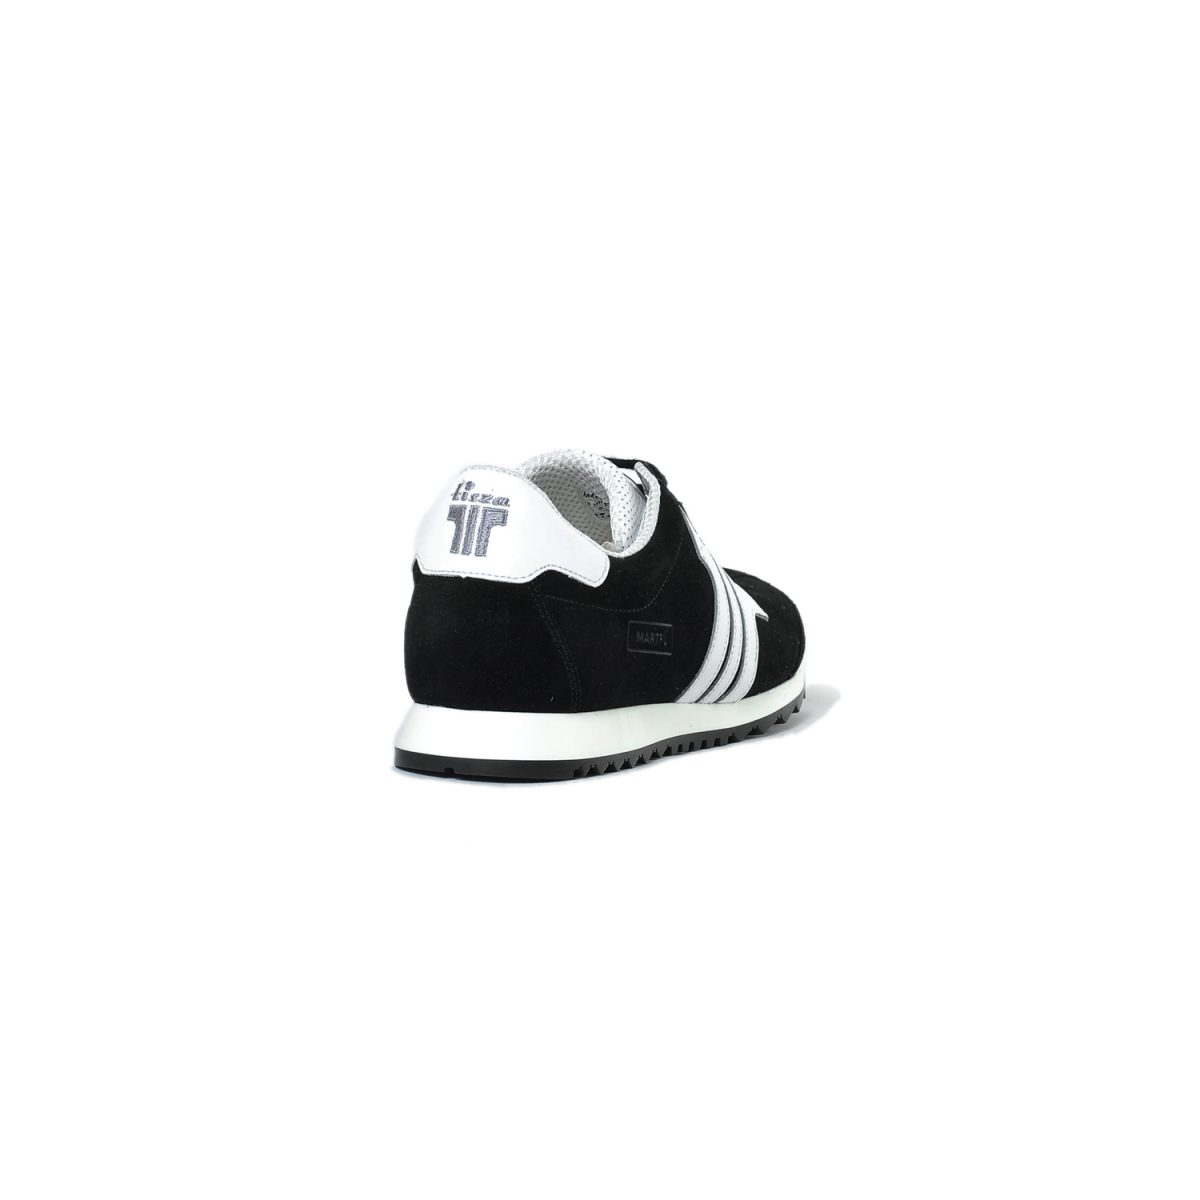 Tisza shoes - Martfű - Black-white